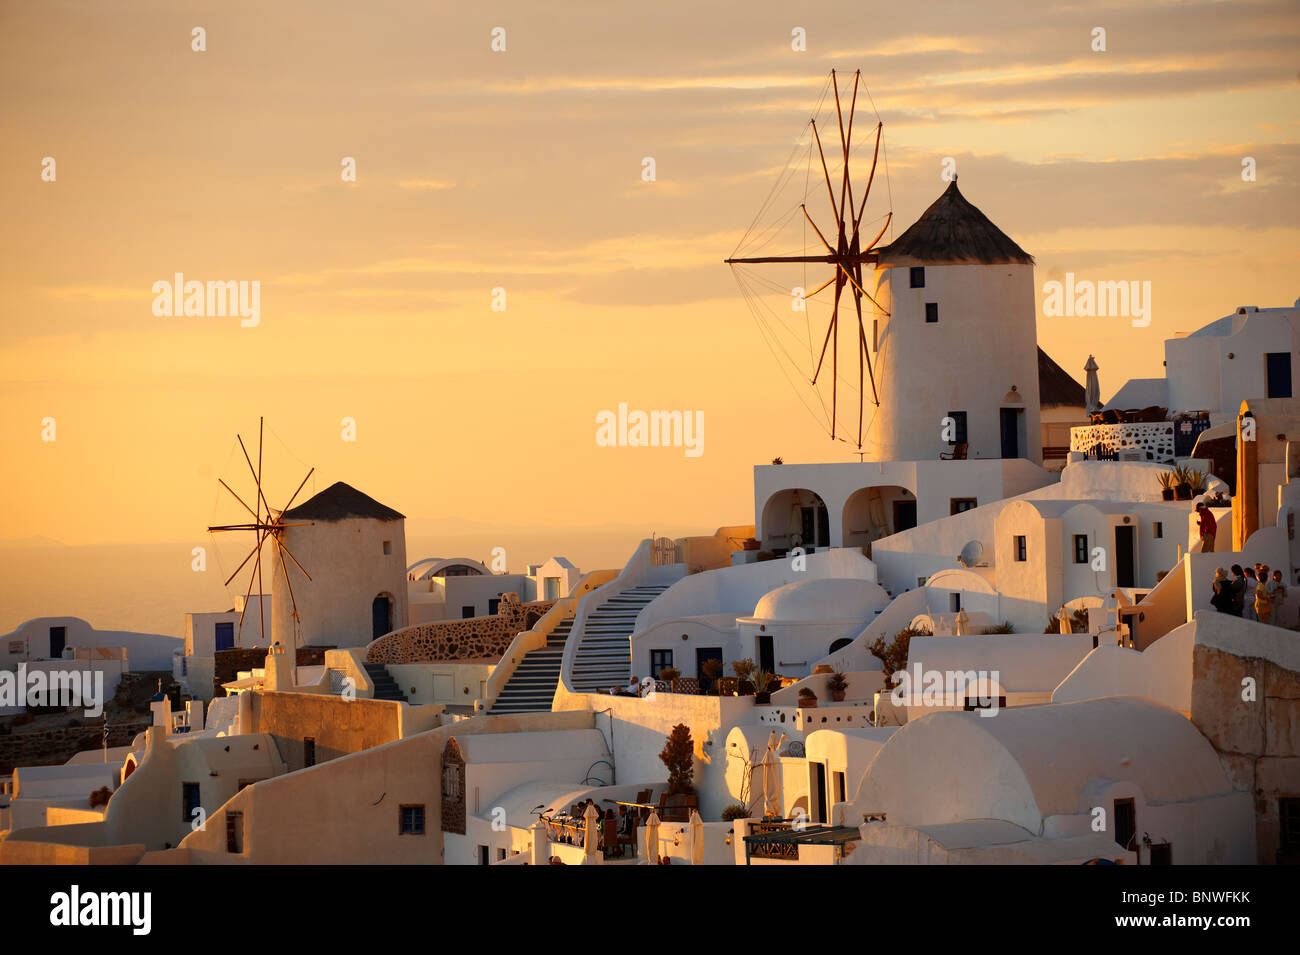 Oia (Ia) Santorini - Windmühlen und Stadt bei Sonnenuntergang, griechischen Kykladen-Inseln - Fotos, Bilder und Grafiken Stockfoto